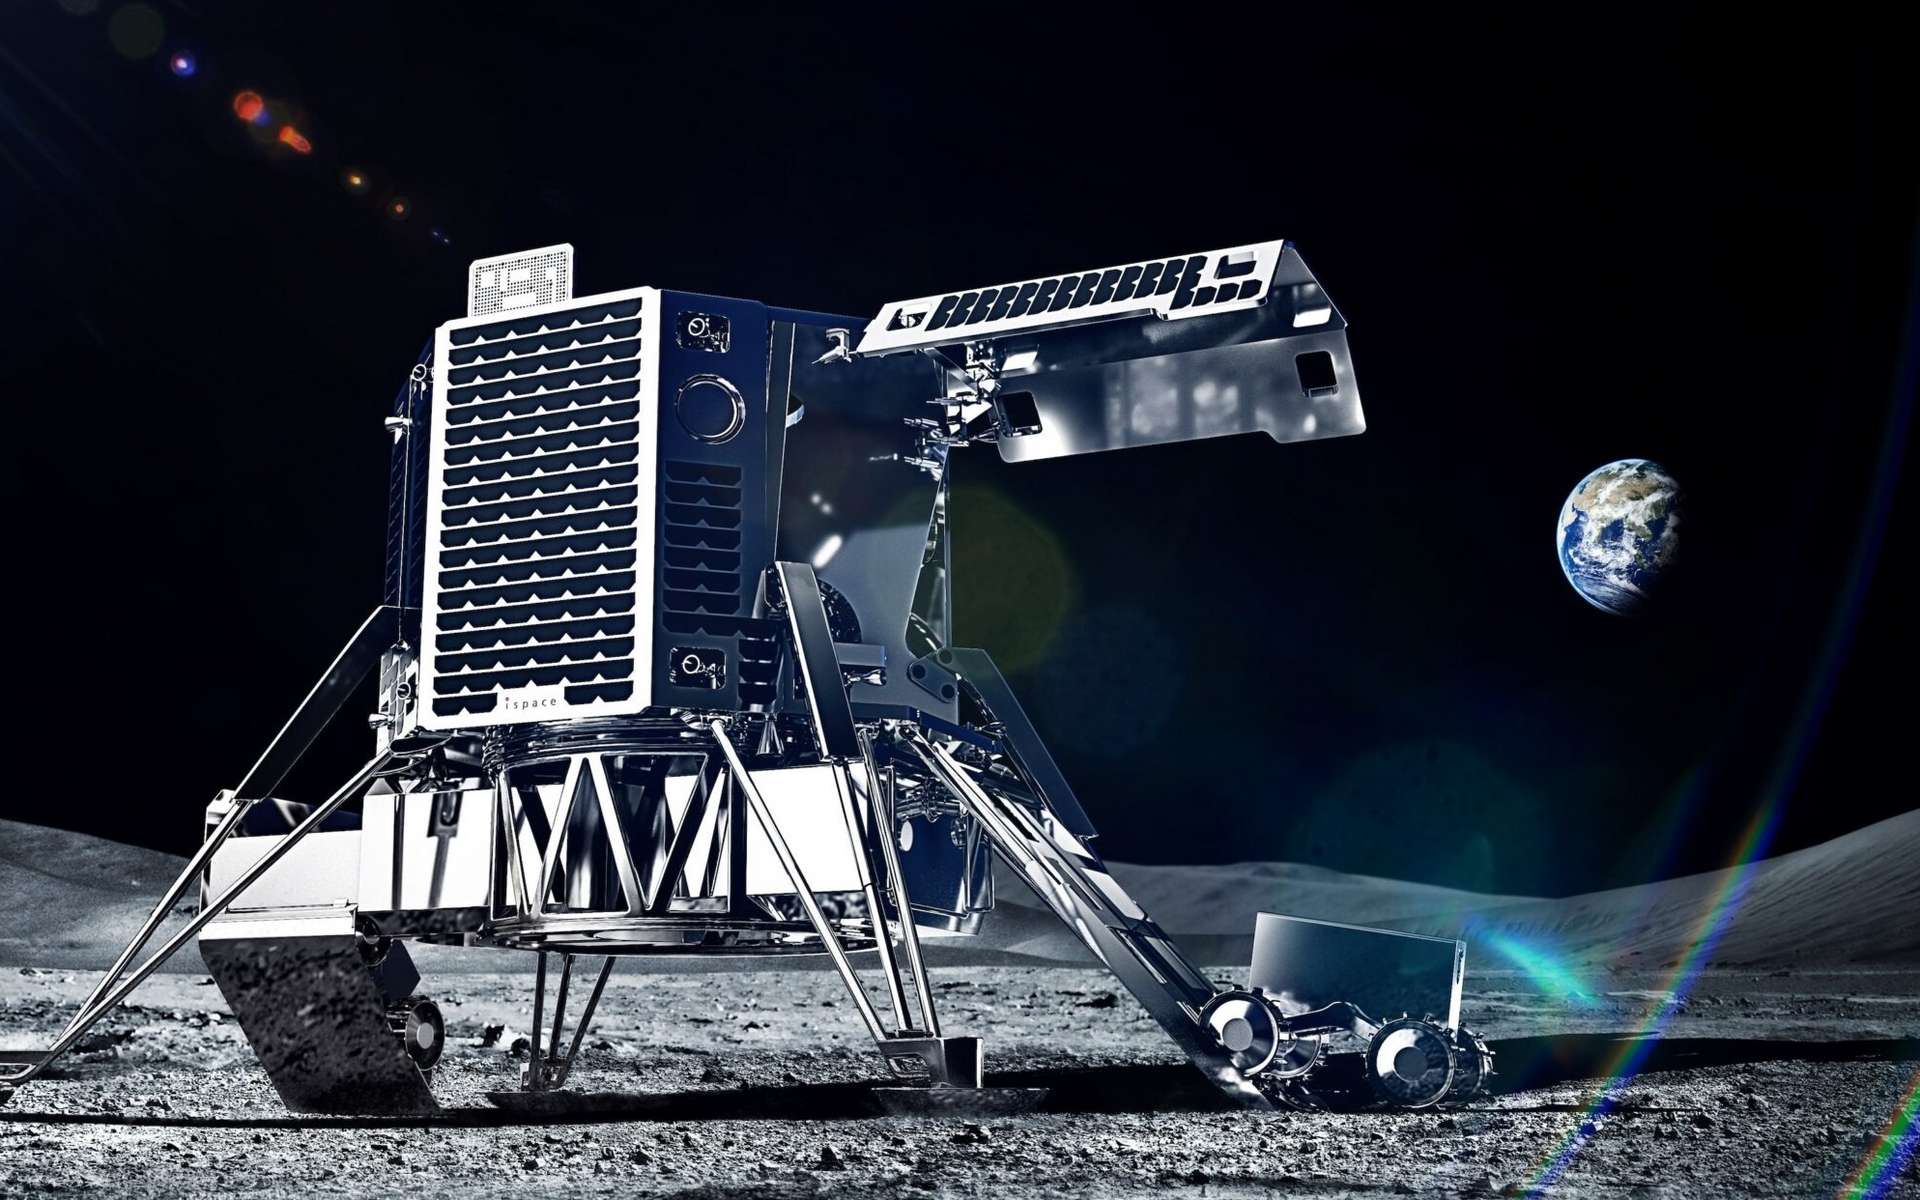 Pour la première fois de l'histoire, une sonde privée va se poser sur la Lune demain et déployer un rover